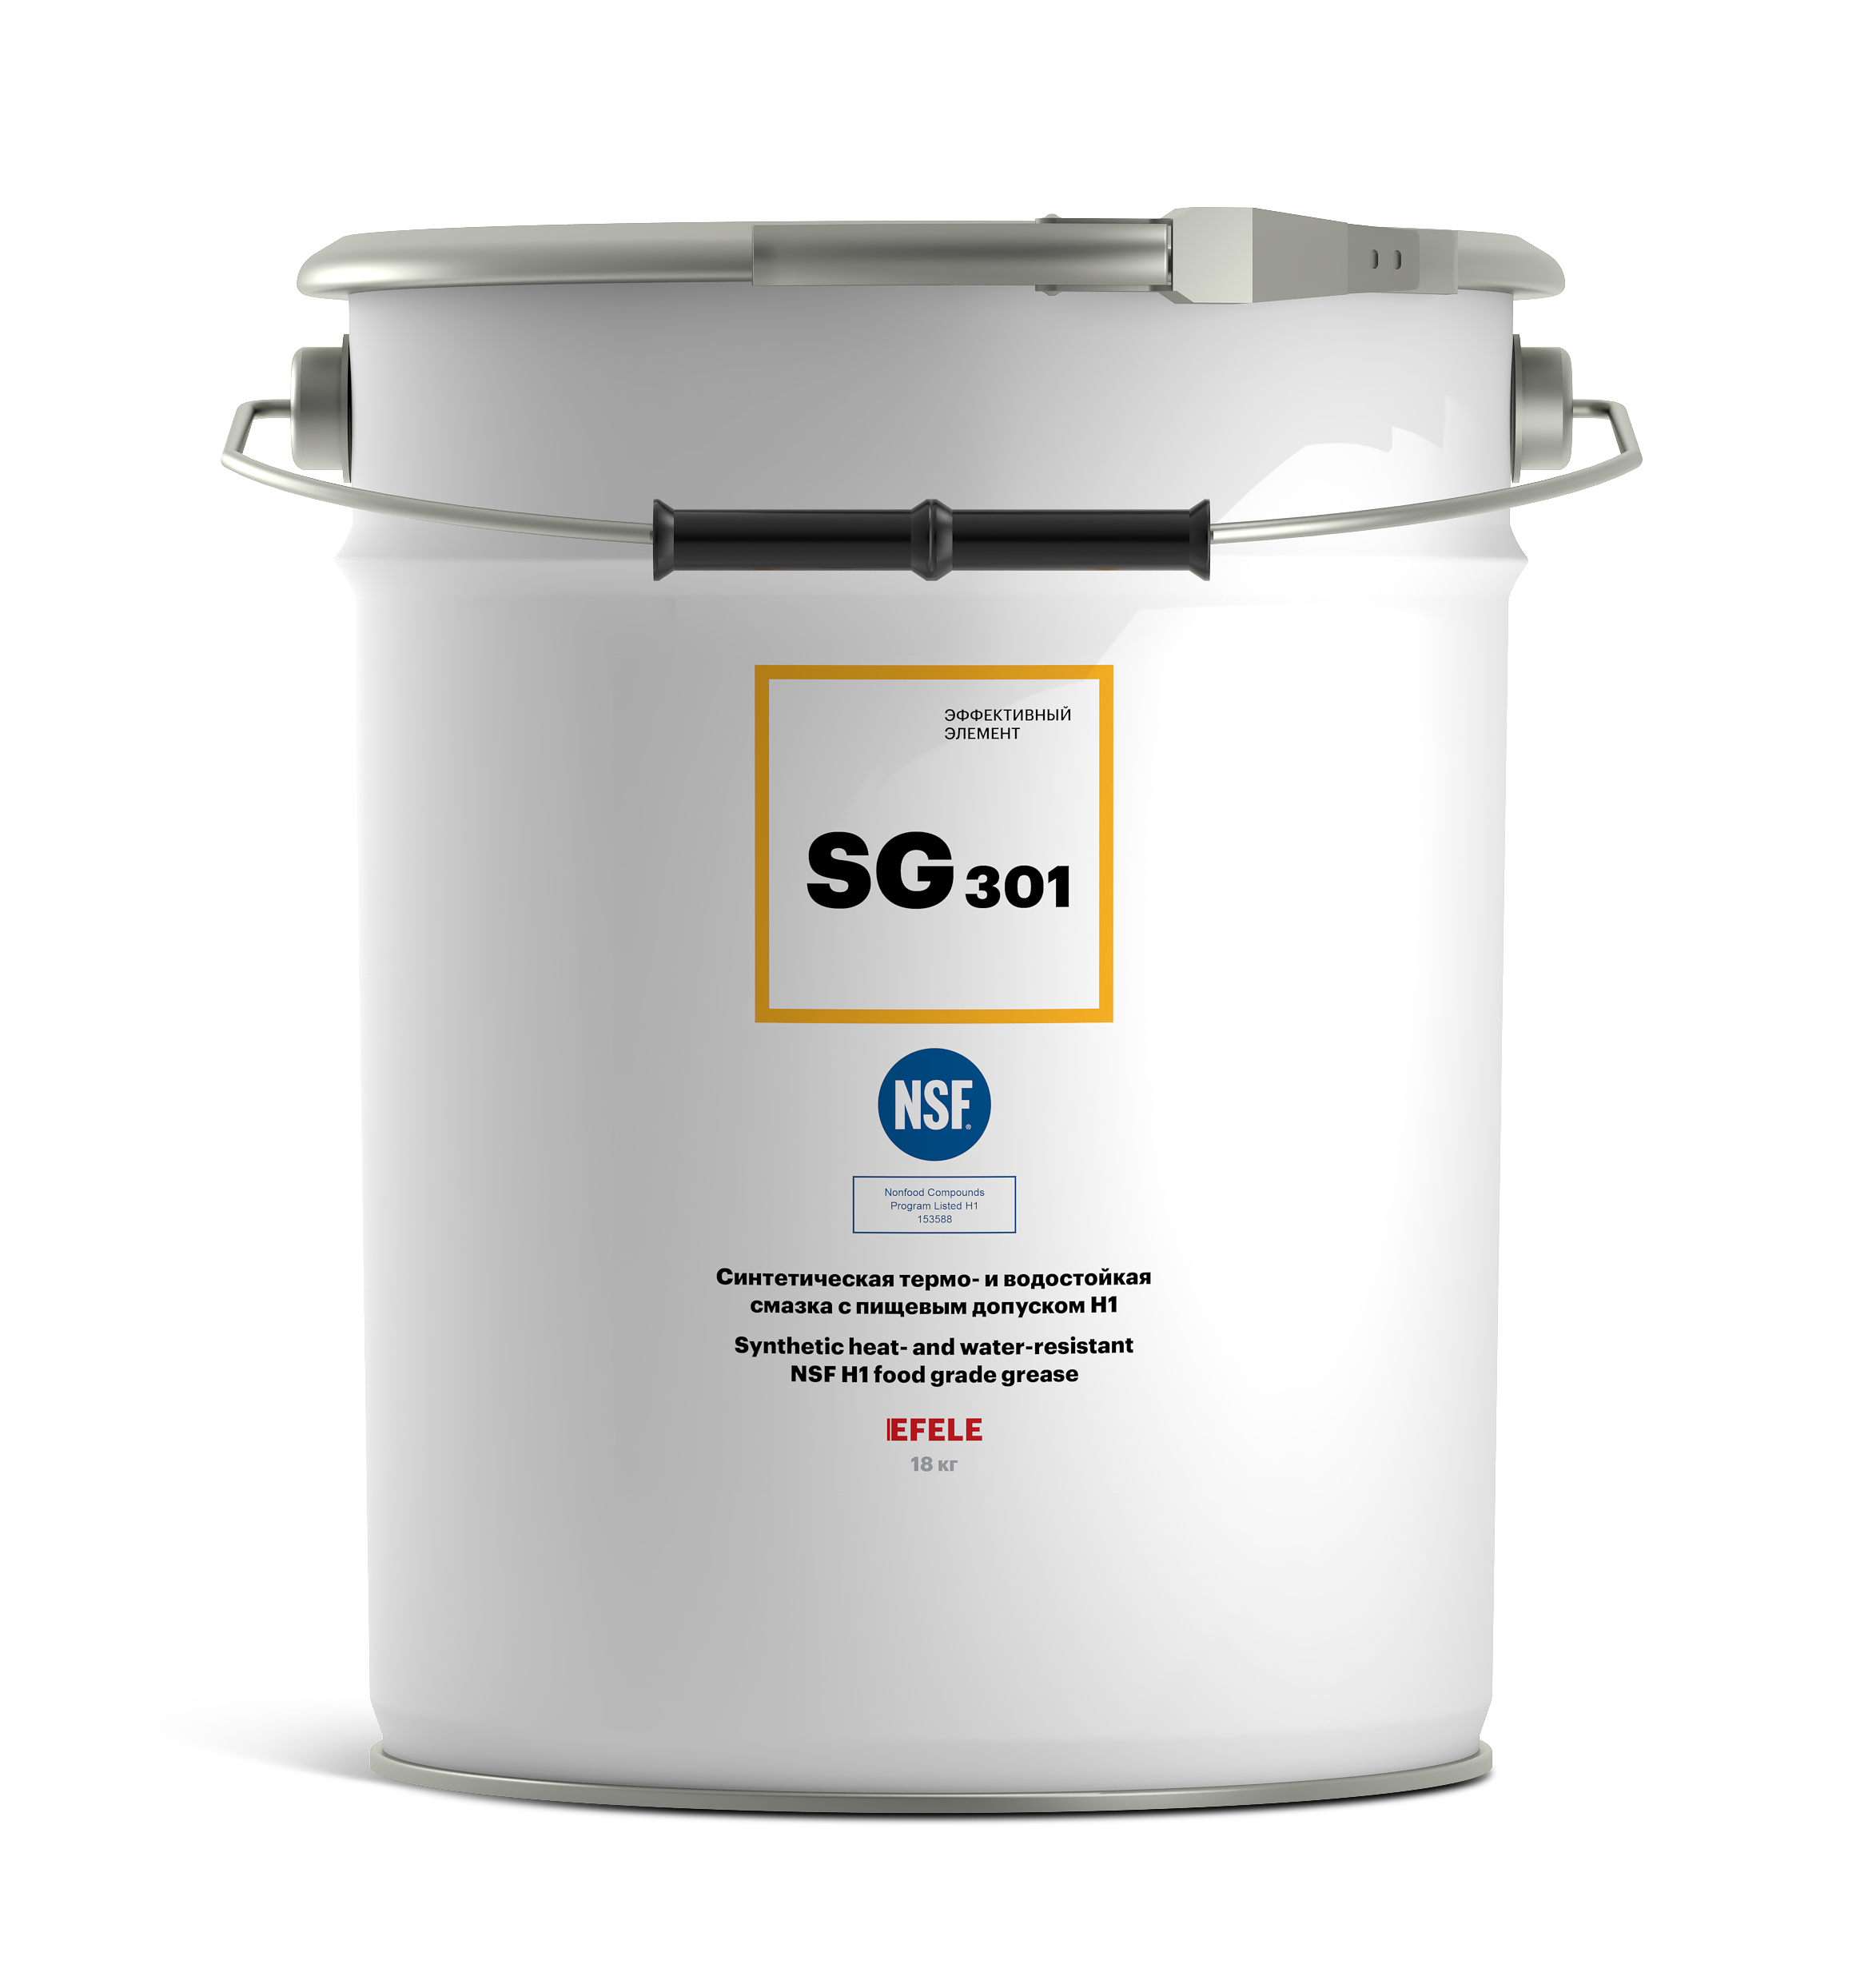 Термо- и водостойкая пластичная смазка с пищевым допуском NSF H1 EFELE SG-301 (18 кг)